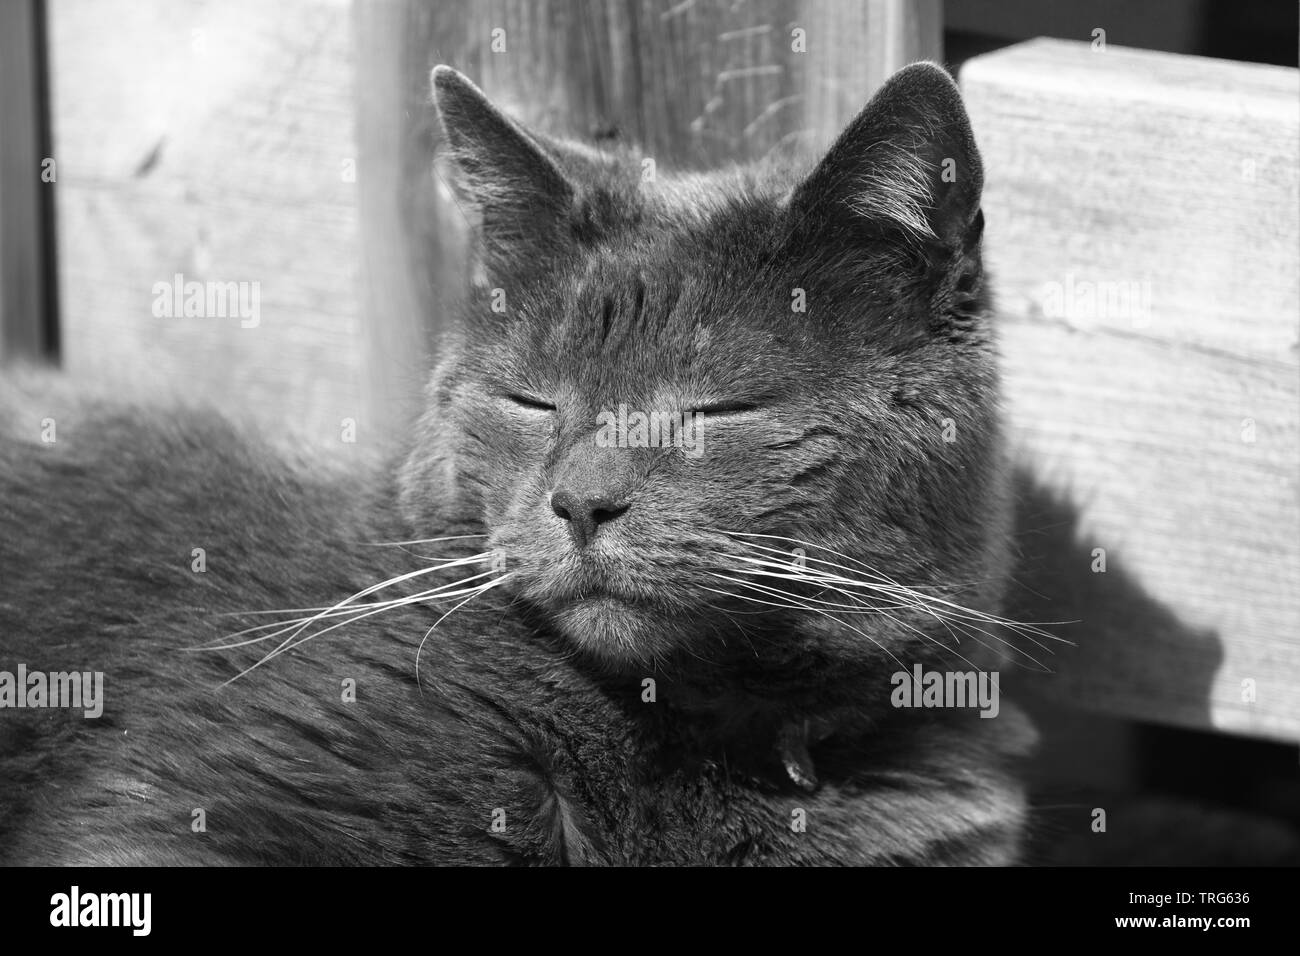 Portrait de chat domestique aux beaux jours. Image en noir et blanc. Banque D'Images